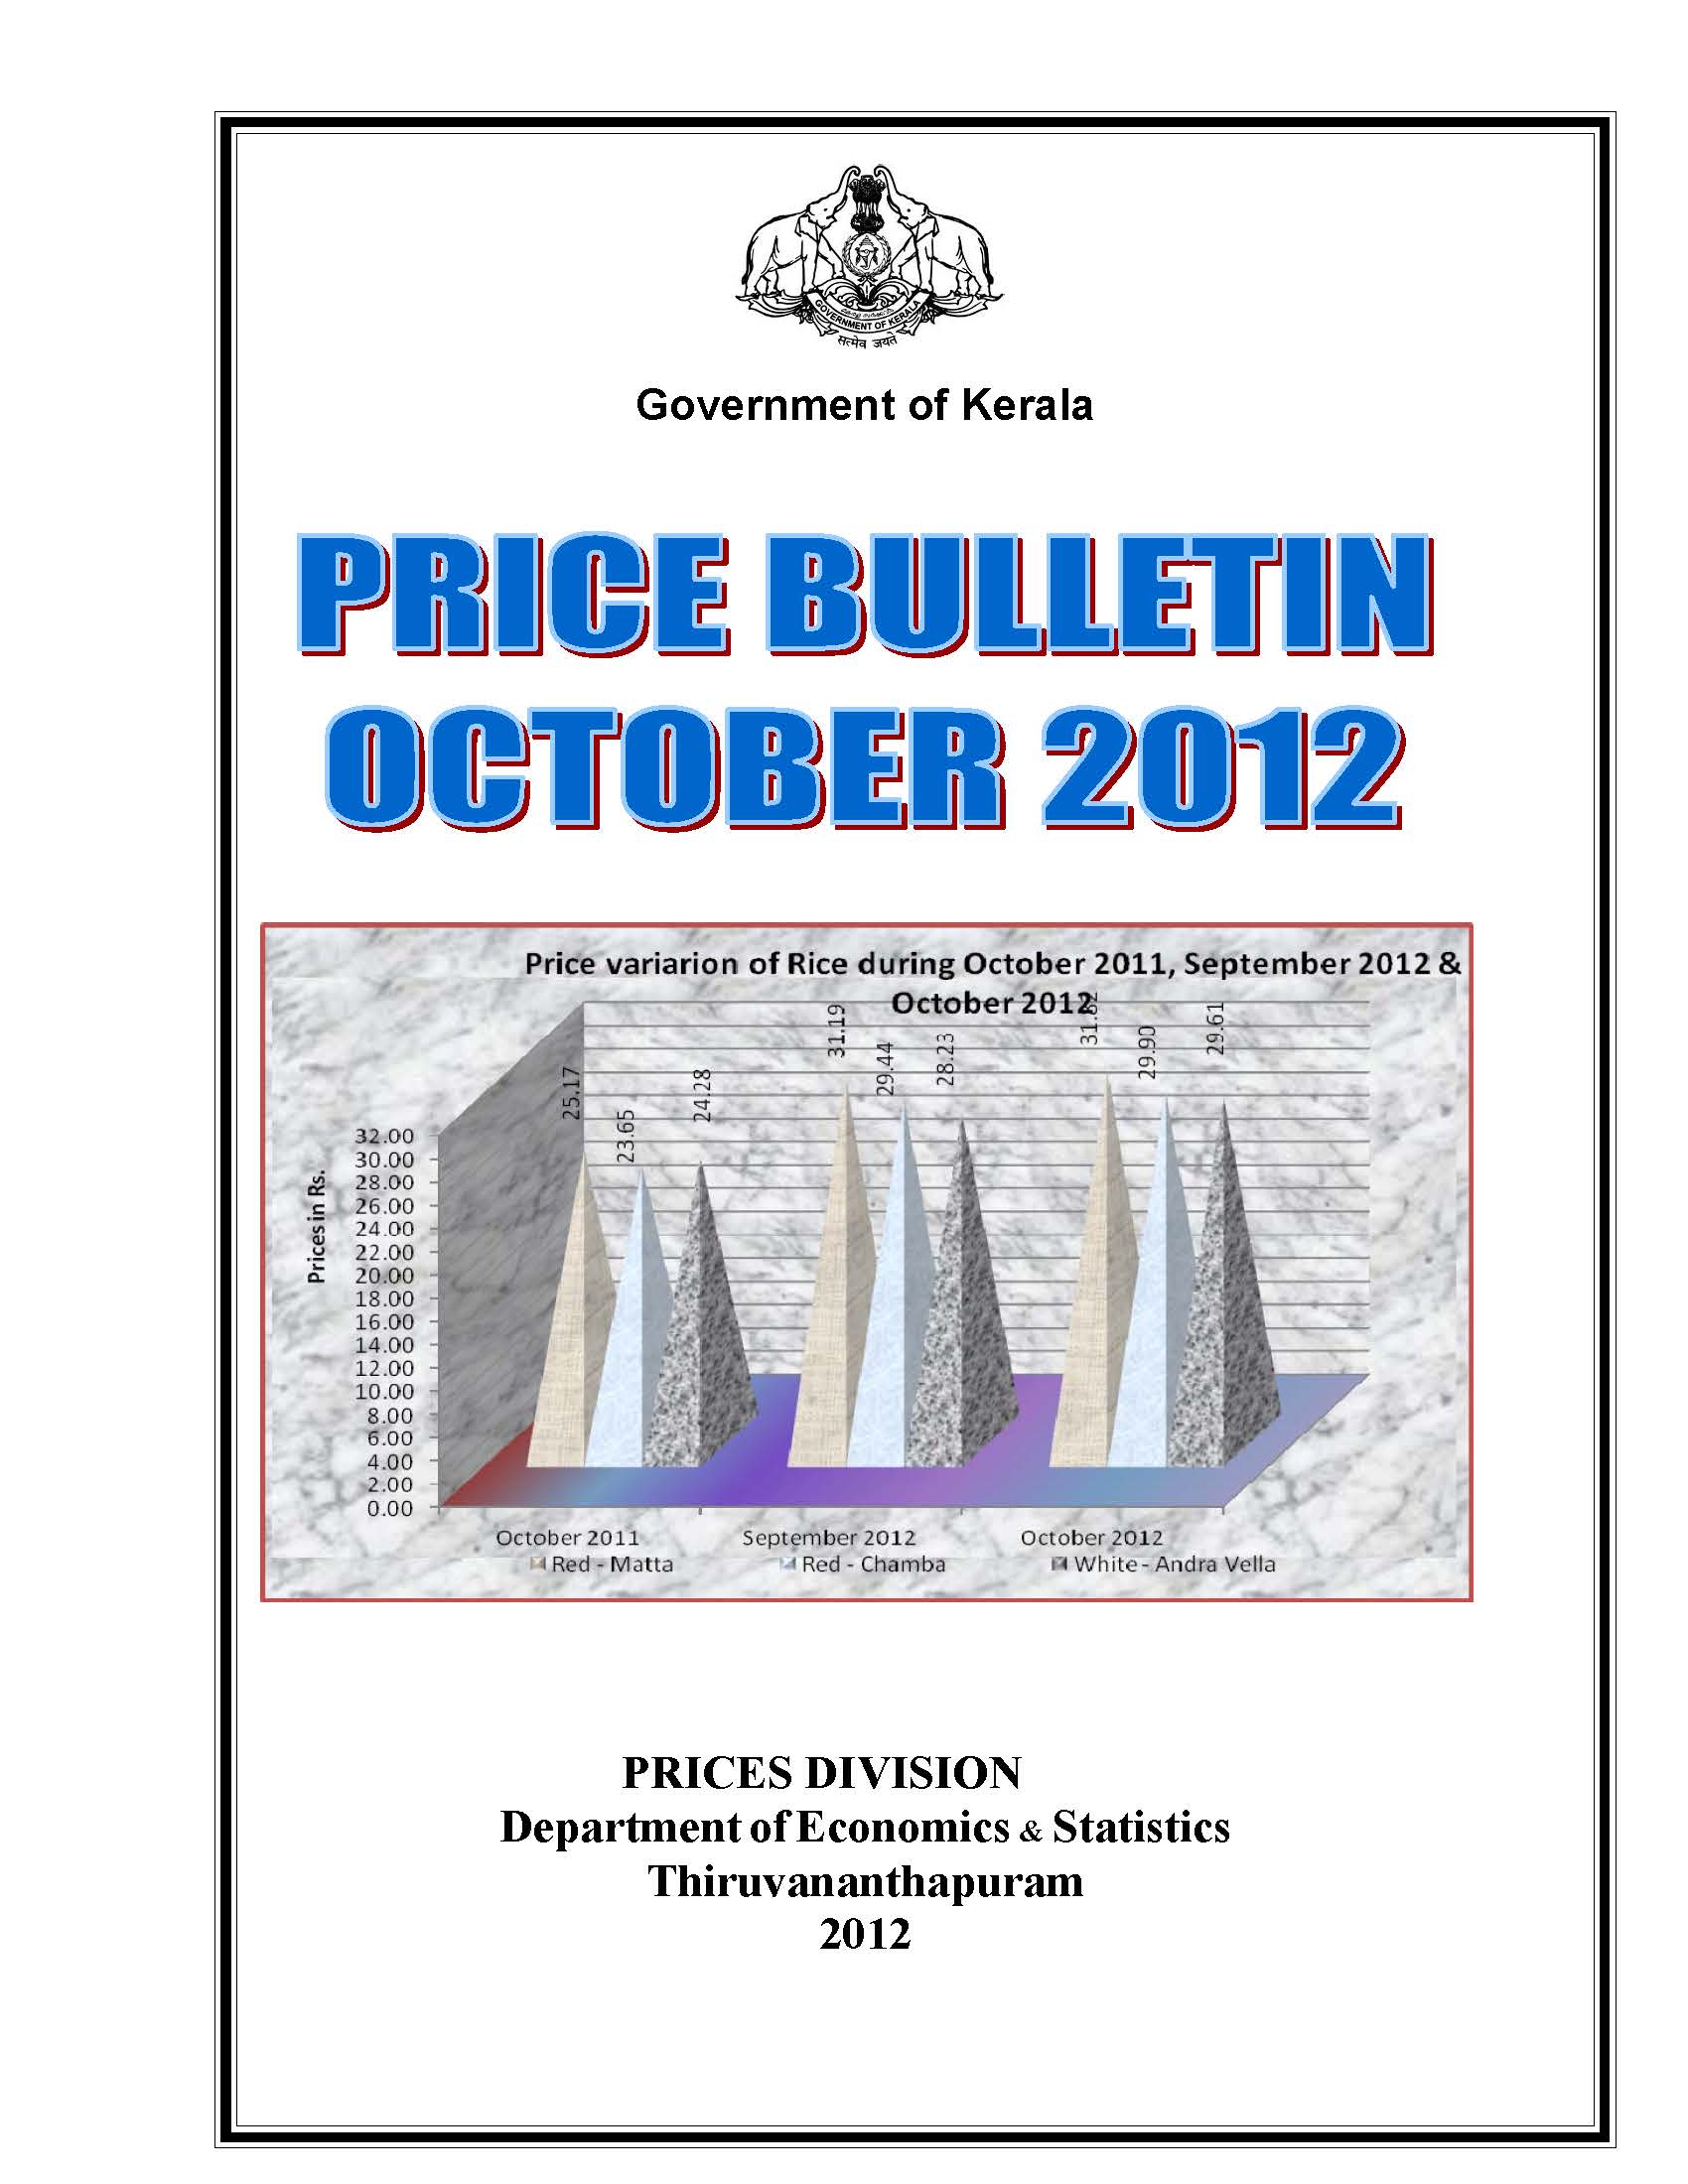 Price Bulletin October 2012